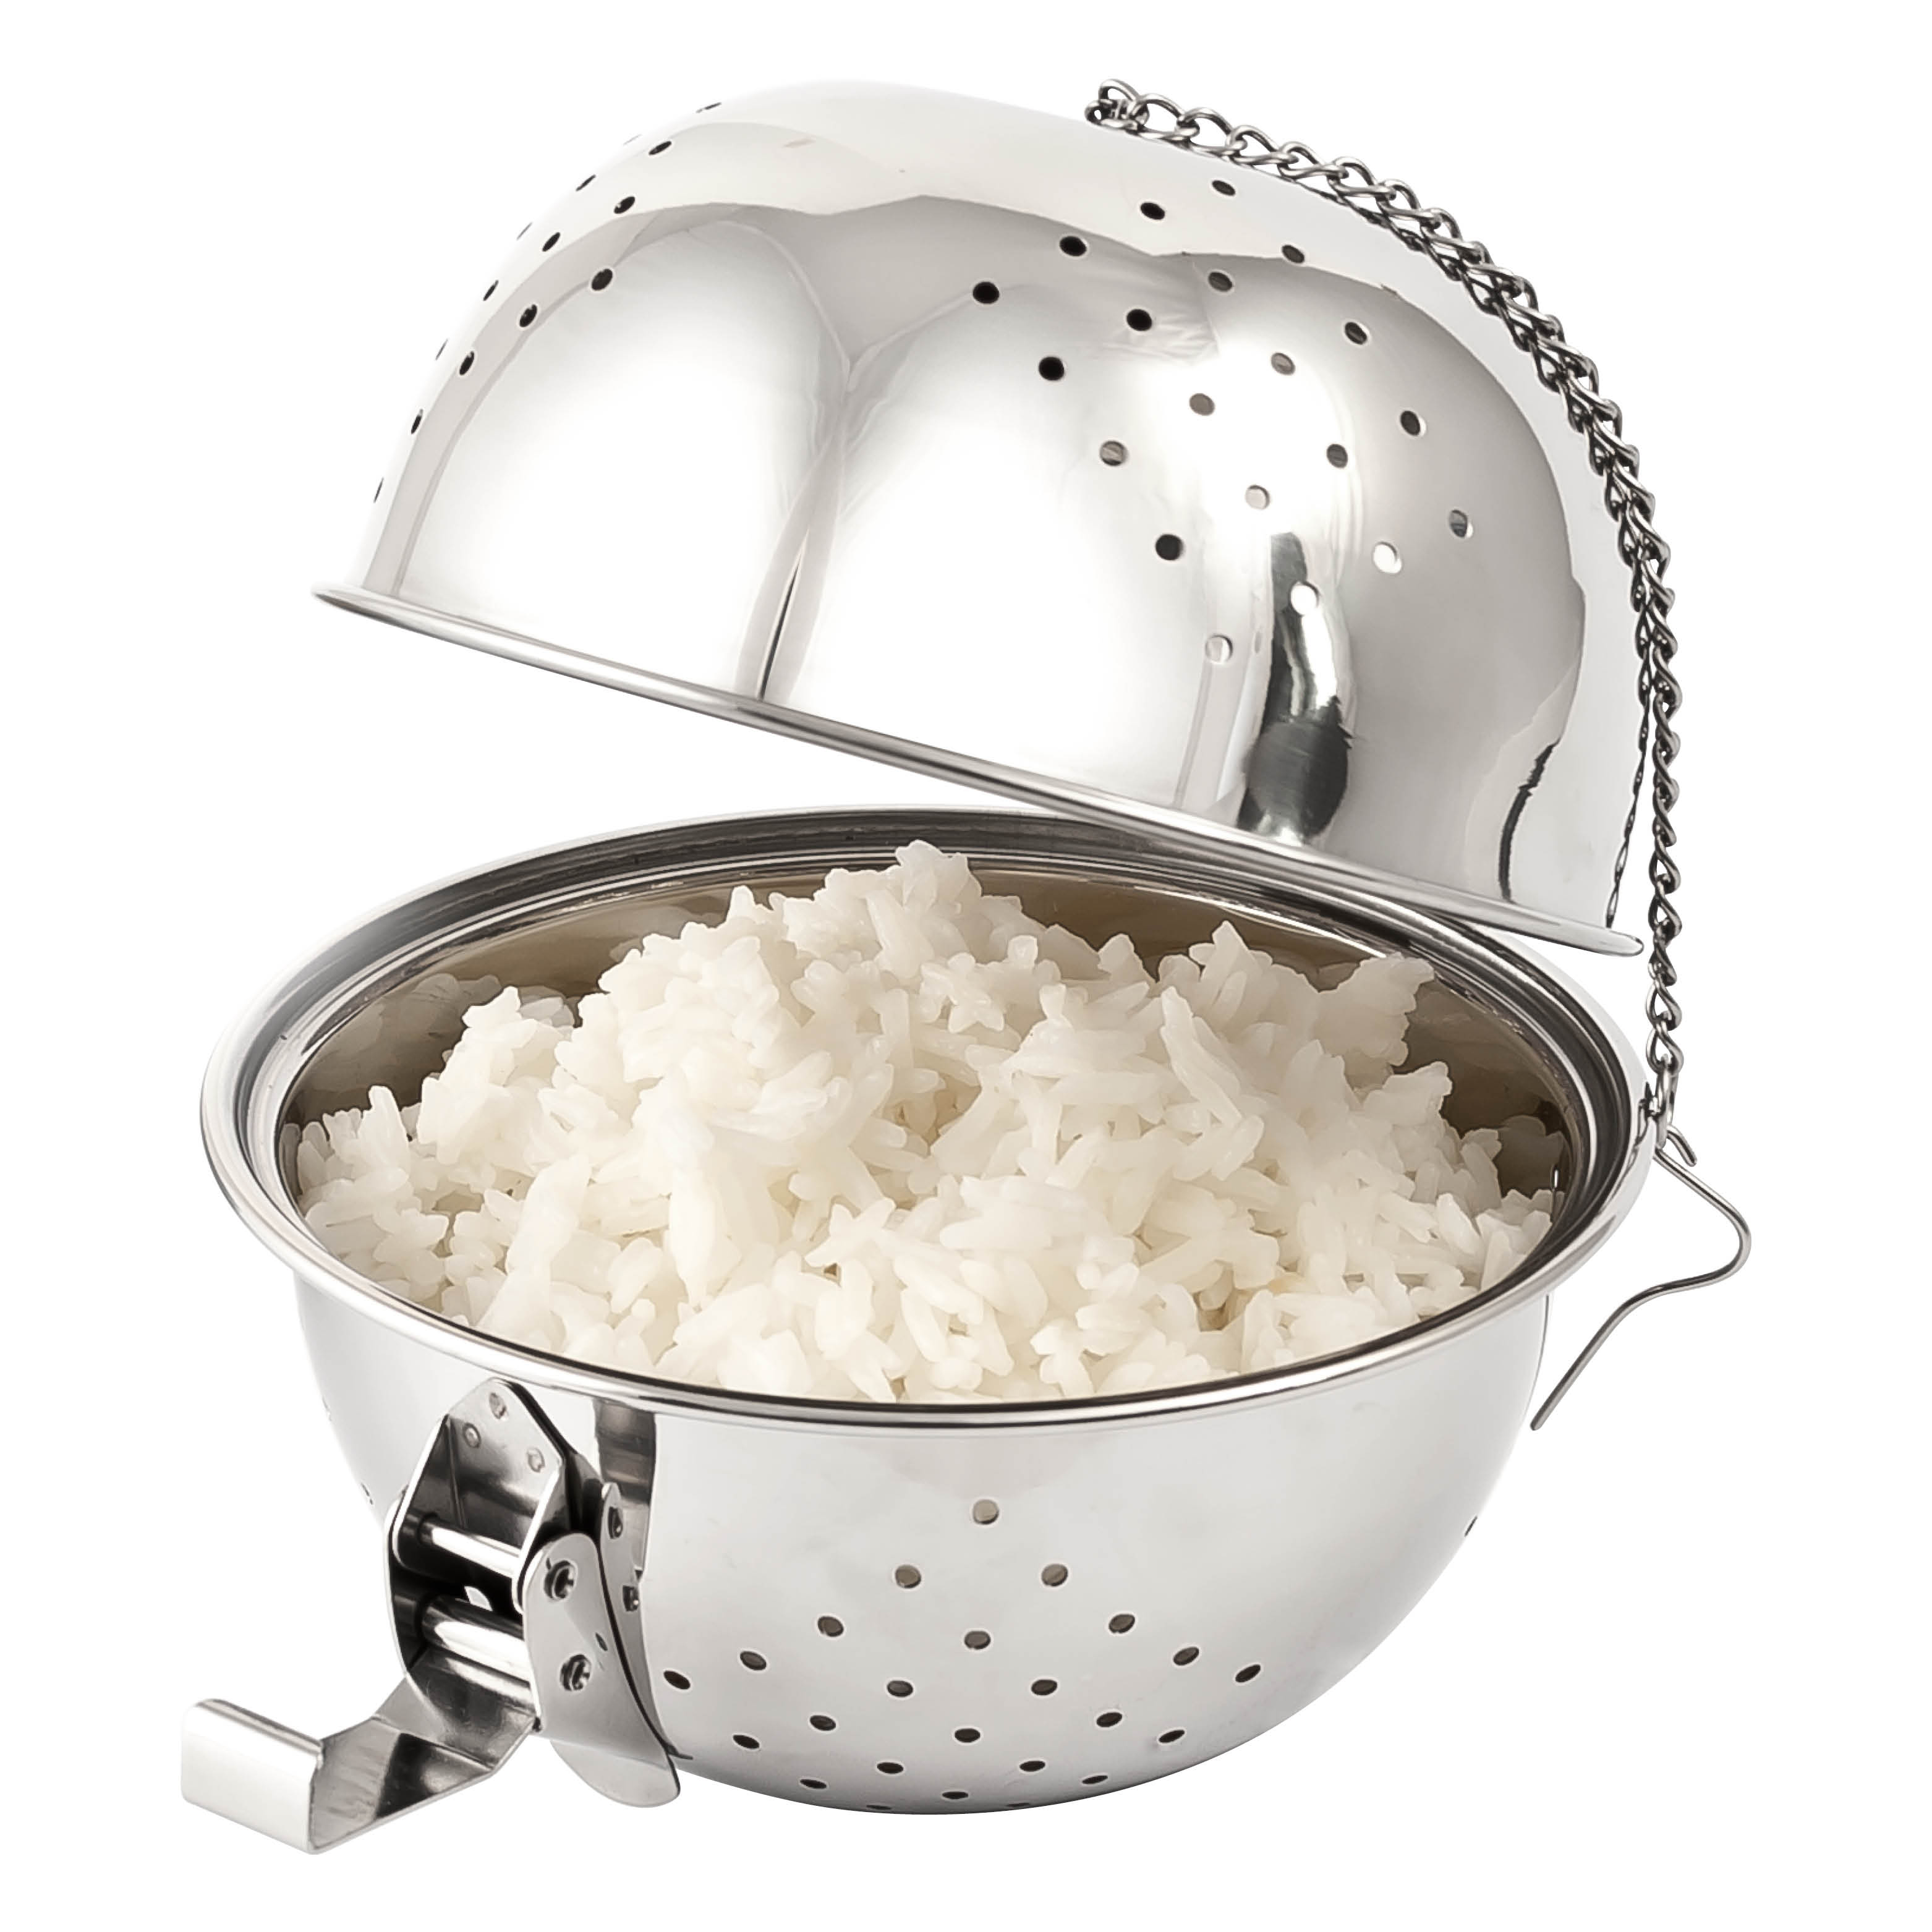 Reis-Kochkugel, aus Edelstahl, für bis zu 400 g Reis